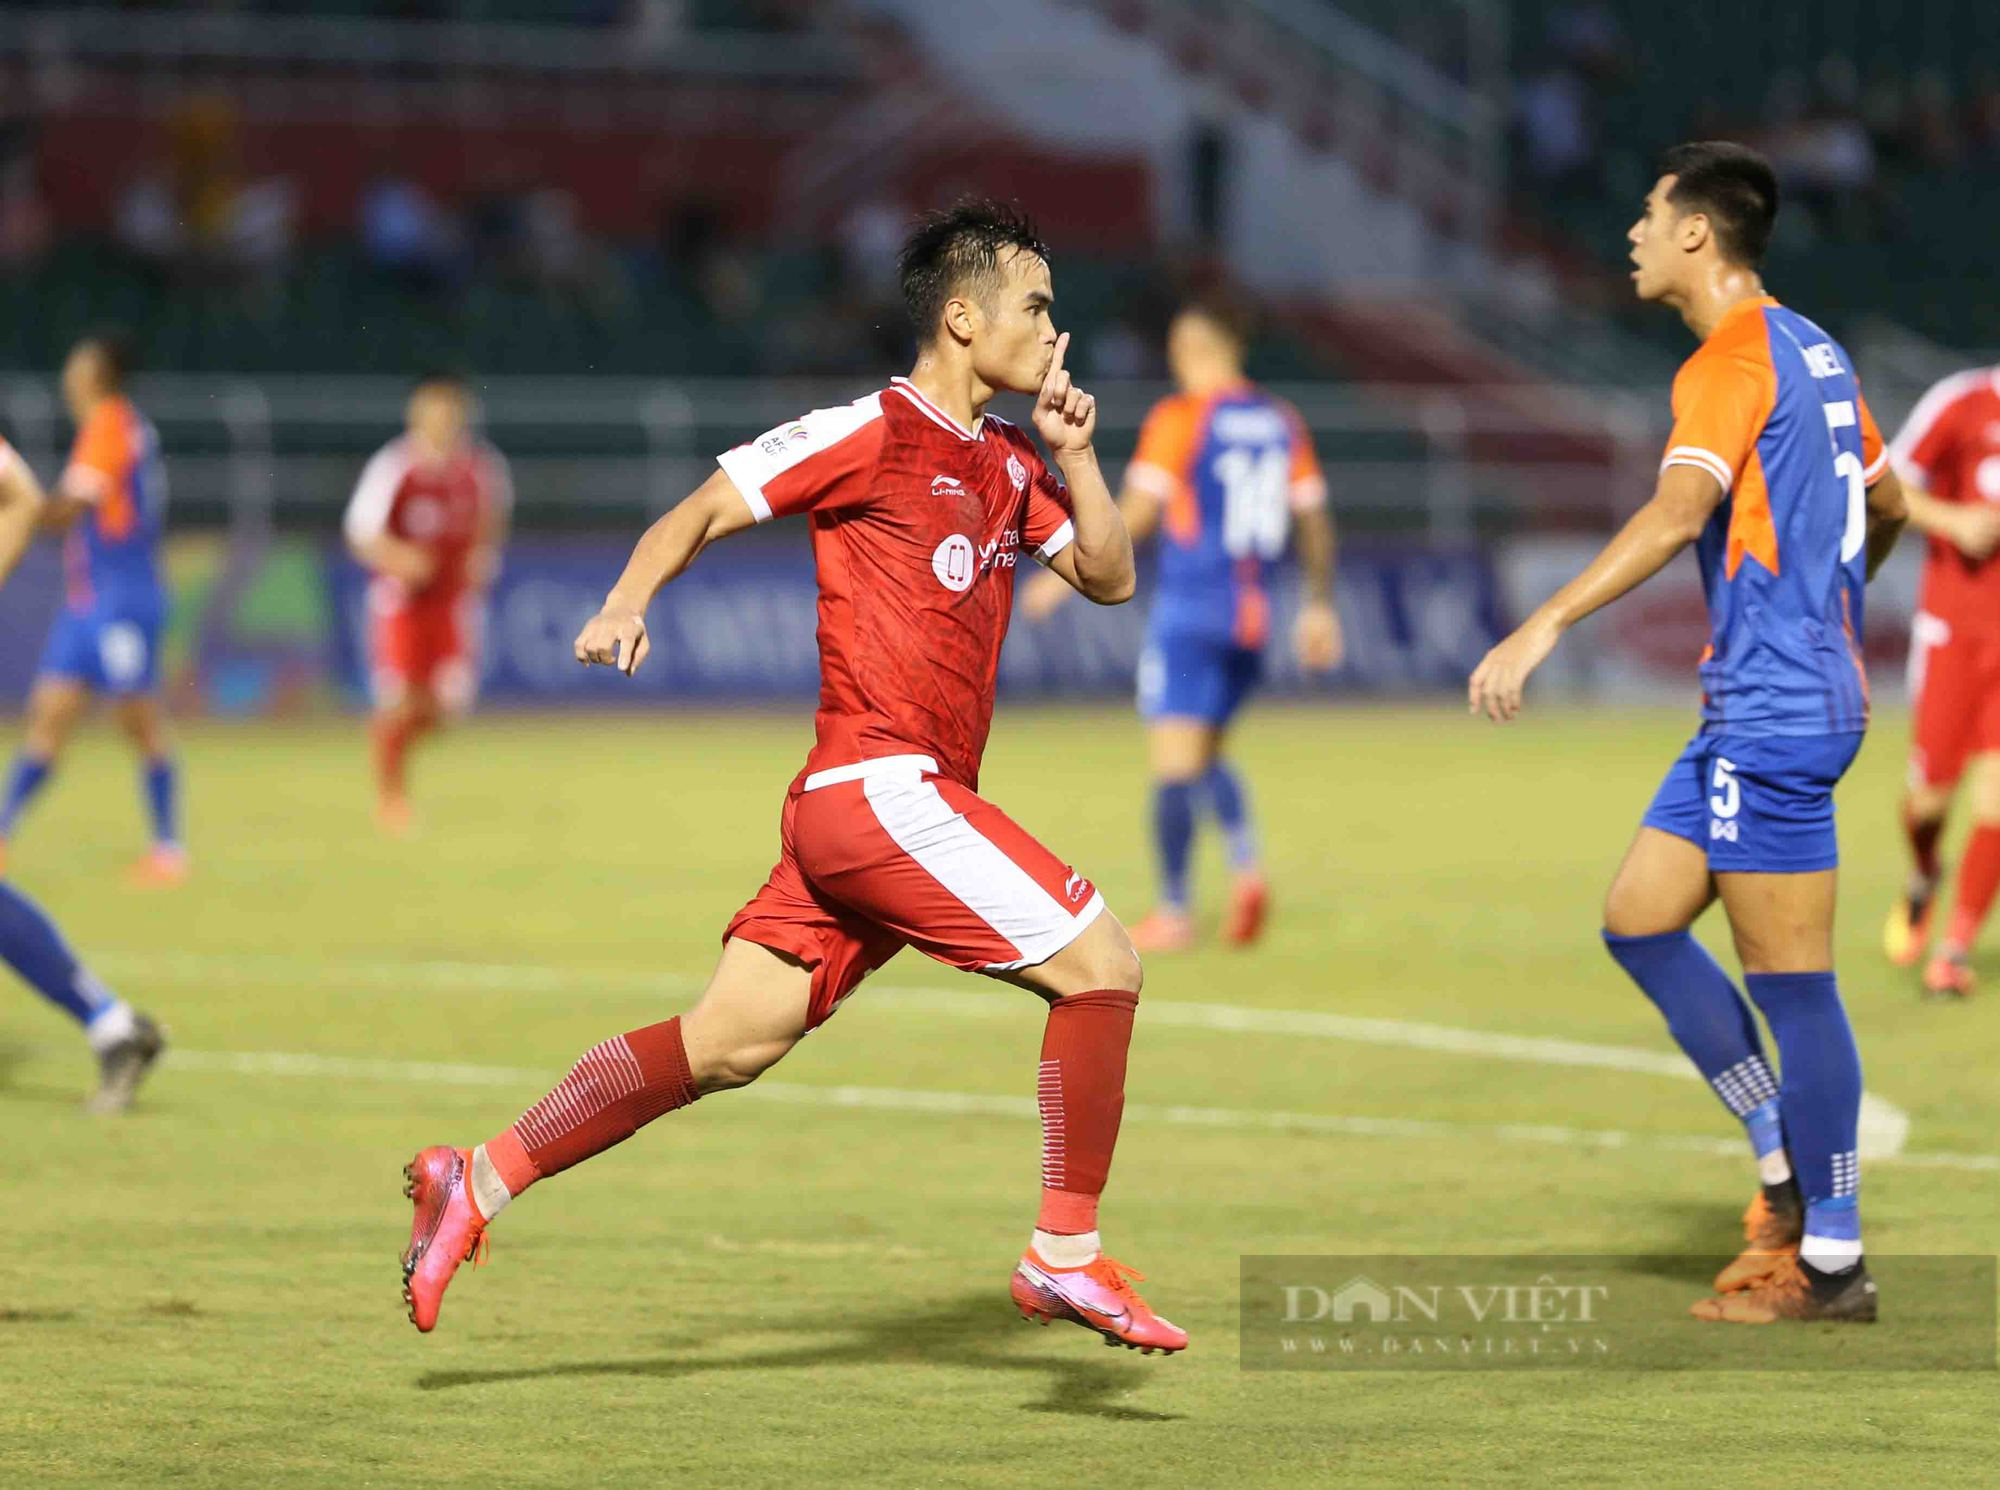 Nhâm Mạnh Dũng kiến tạo, Viettel đánh bại bóng Singapore vượt qua vòng bảng AFC Cup - Ảnh 9.